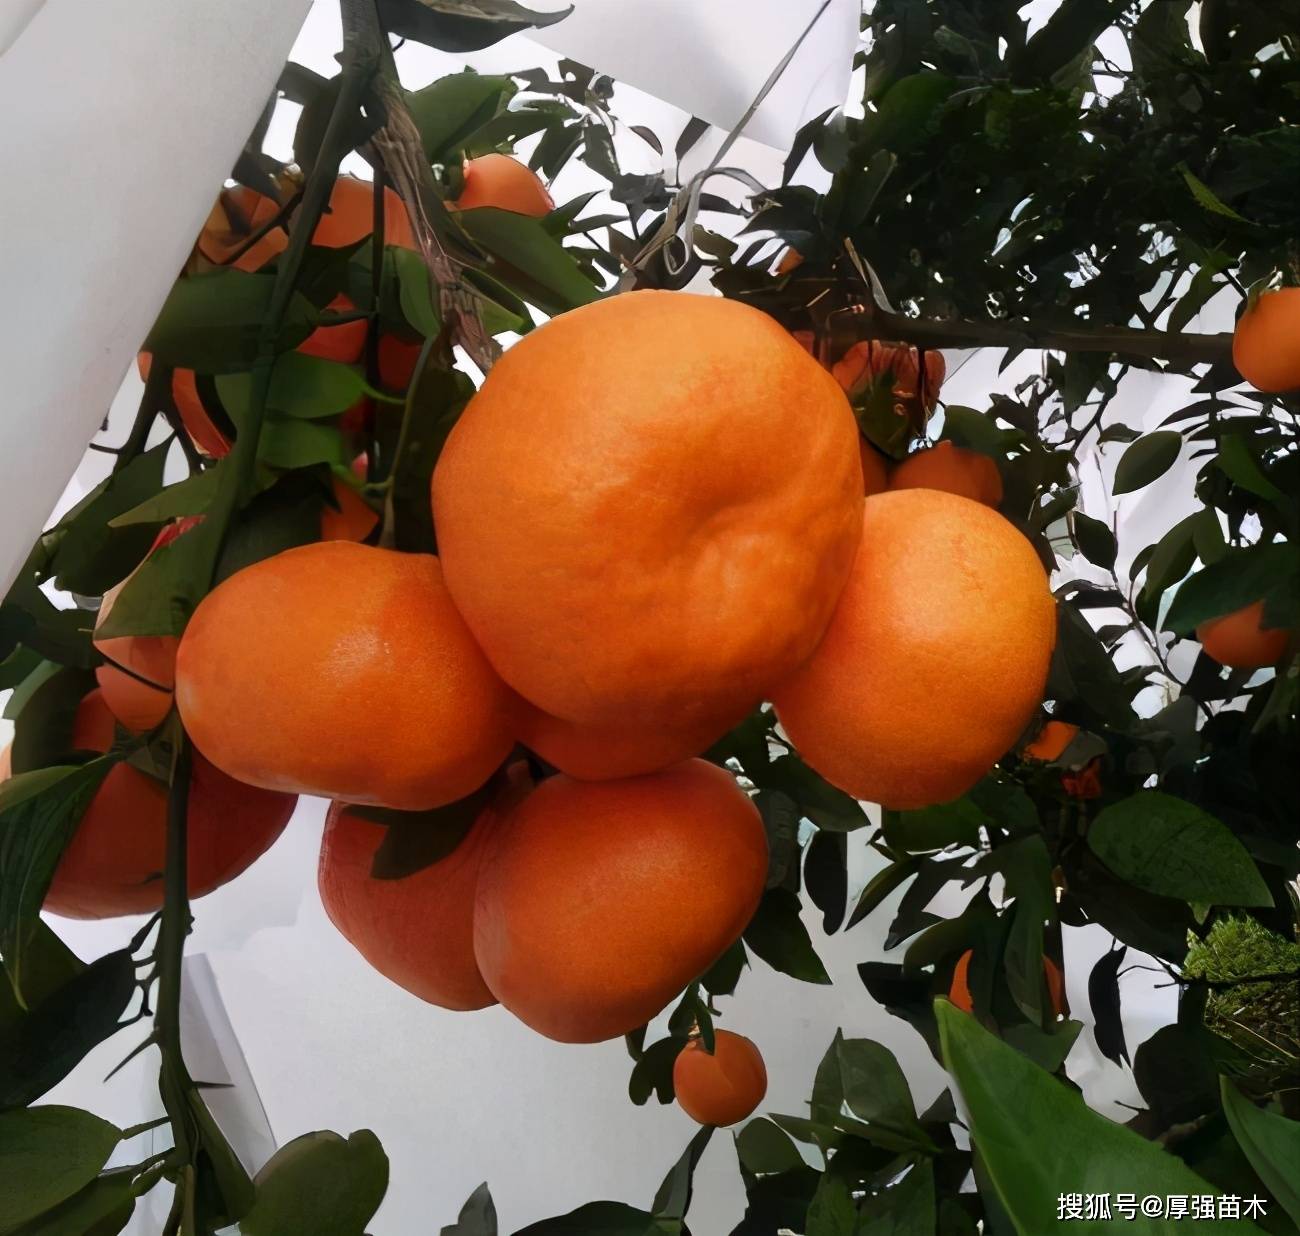  柑橘芽的各种特性你懂吗？  苹果桃葡萄的枝芽相同的